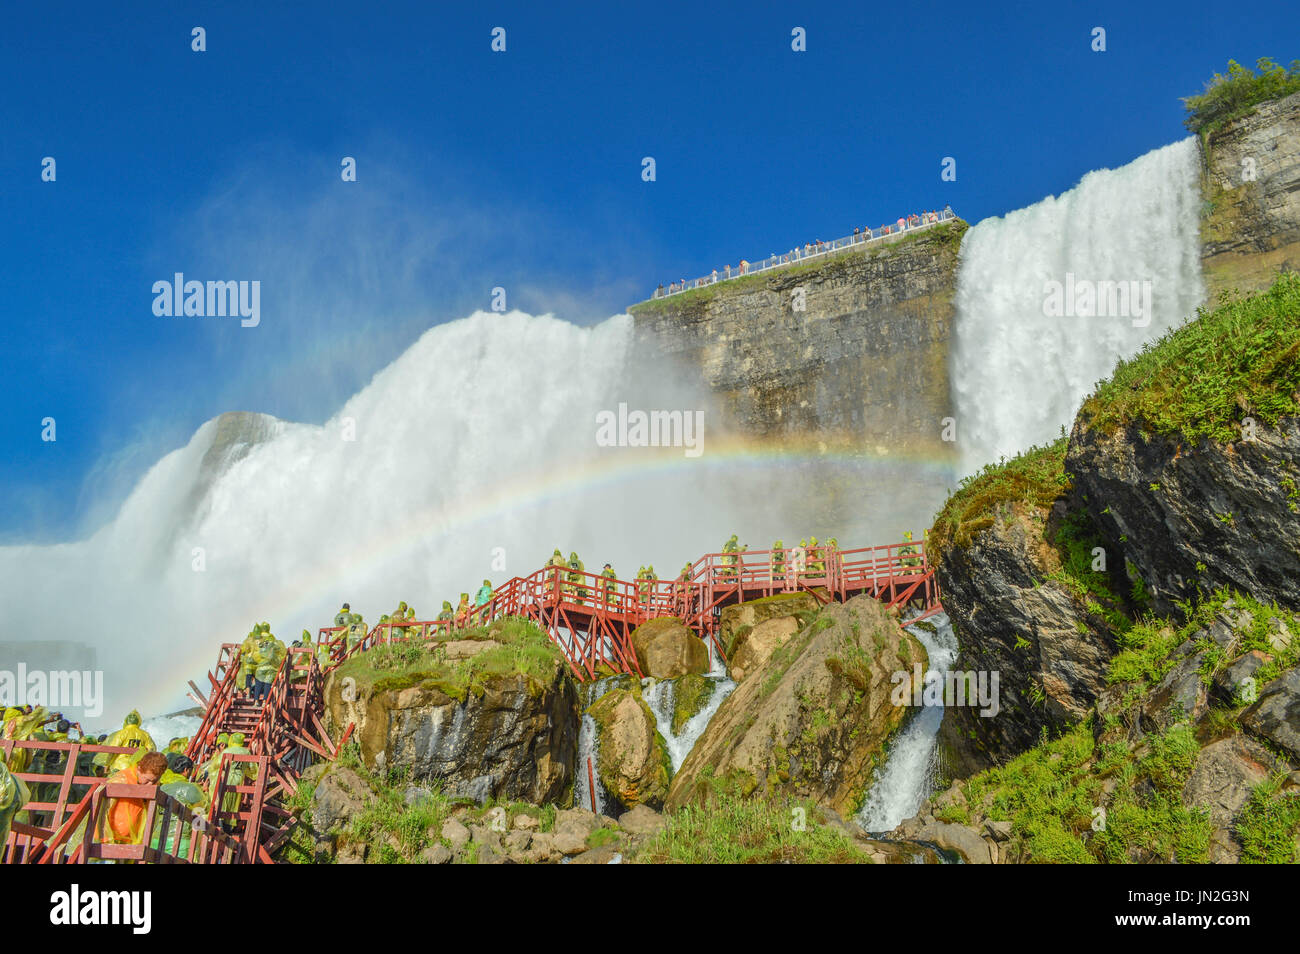 "Himmel auf Erden." Regenbogen intensivieren die Schönheit des amerikanischen Wasserfälle bei Hurricane Deck - Höhle der Winde, Niagara Falls, NY. Stockfoto